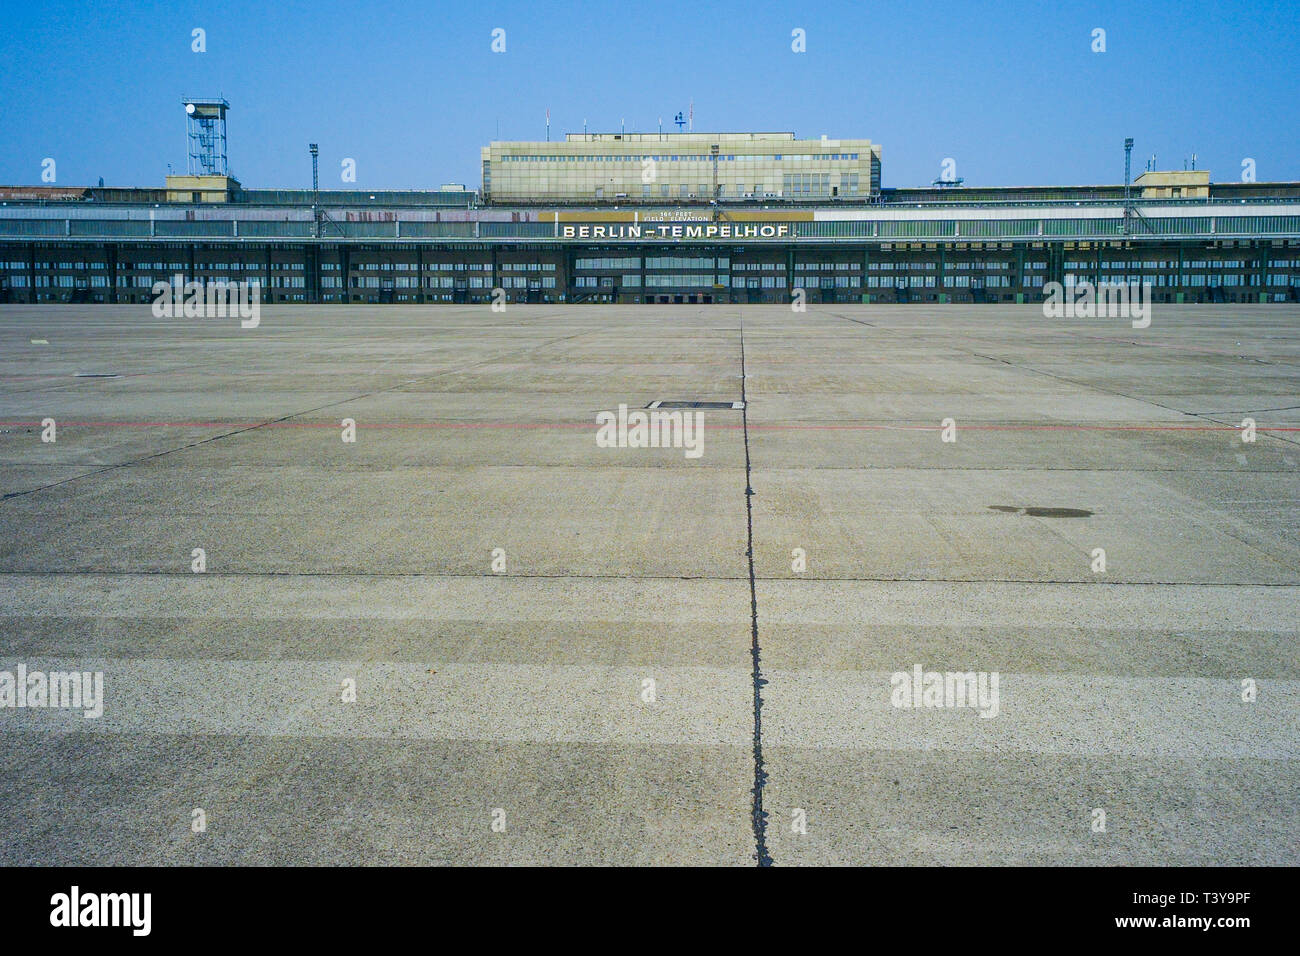 Berlin-Tempelhof airport, Berlin, Kreuzberg, Germany Stock Photo